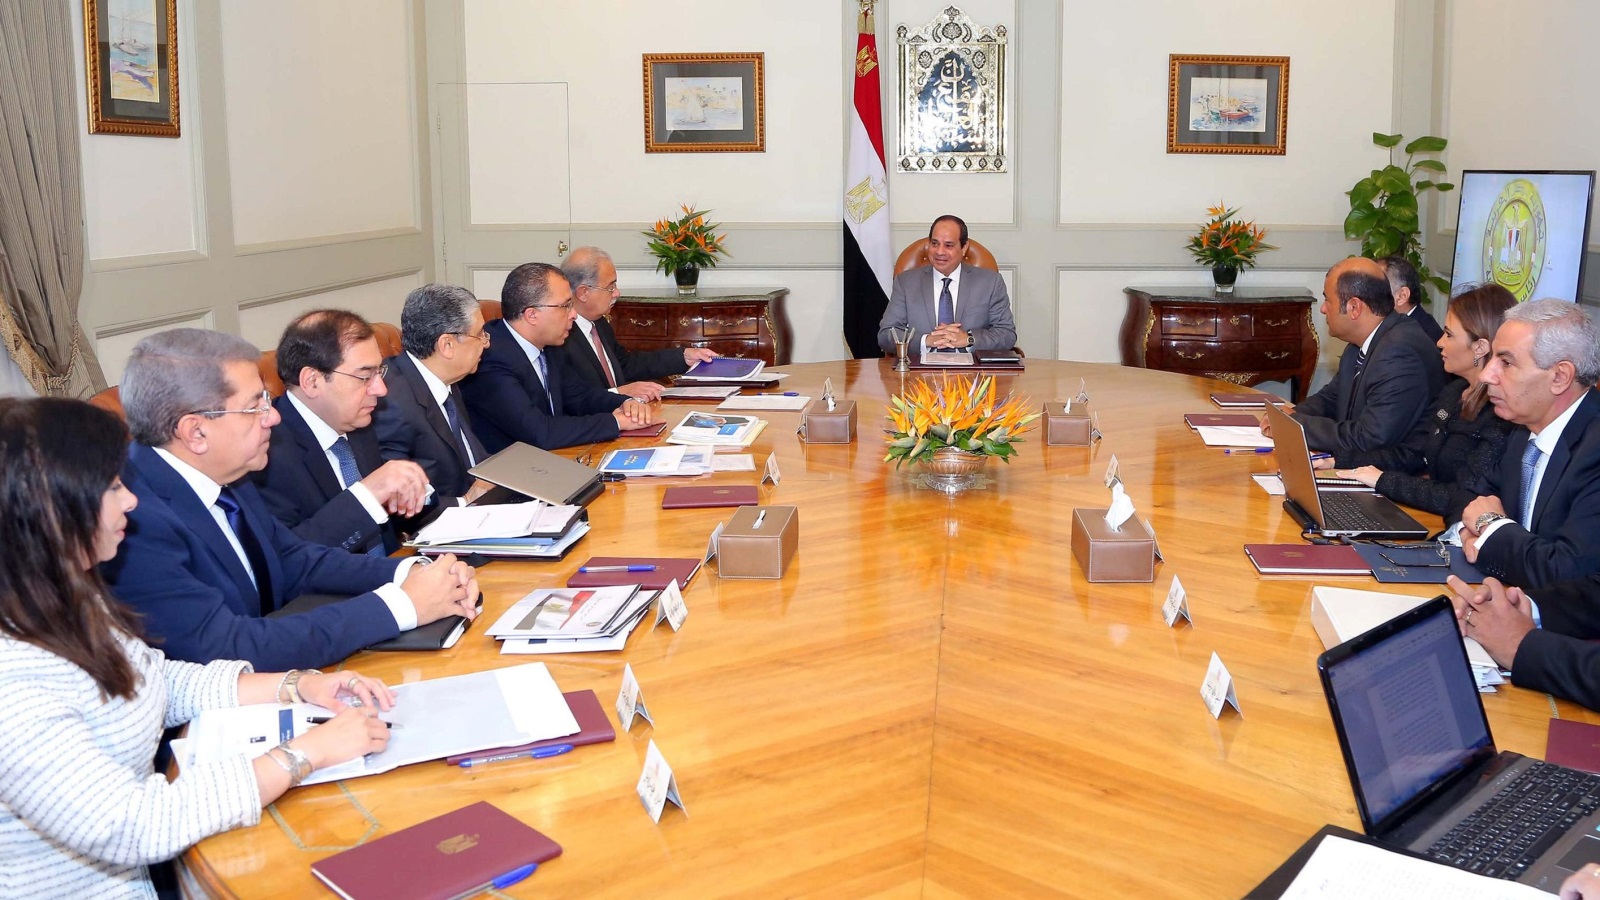 تحت قيادة السيسي أبرمت الحكومة المصرية اتفاقا مع صندوق النقد الدولي 